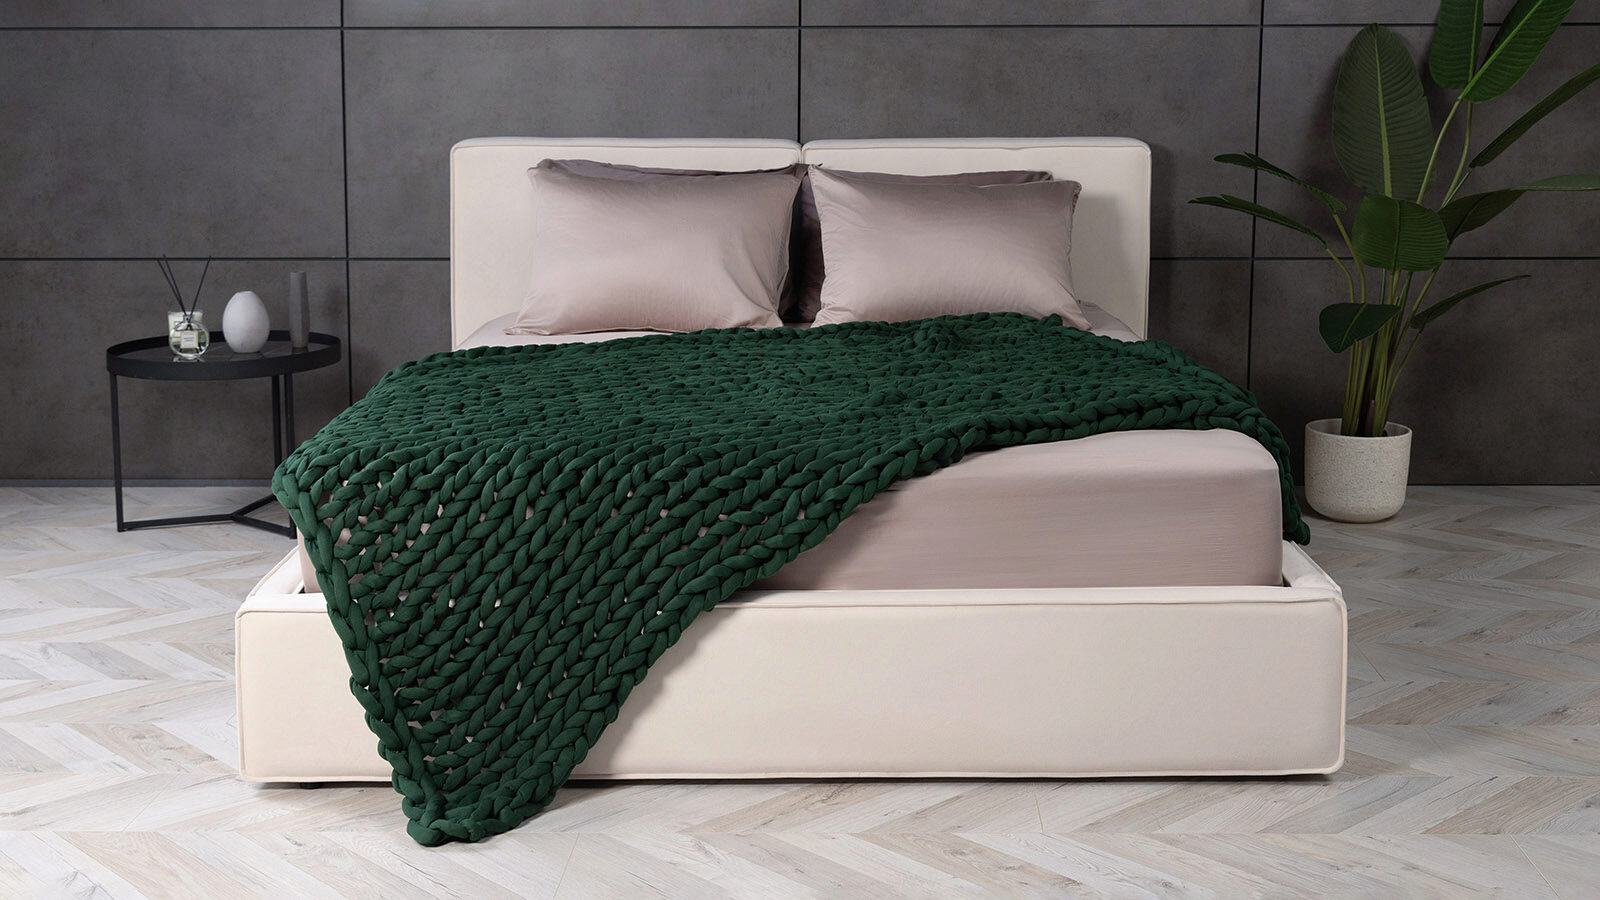 Утяжеленное одеяло Gravity Wicker, цвет Зеленый теория невероятности как мечтать чтобы сбывалось как планировать чтобы достигалось